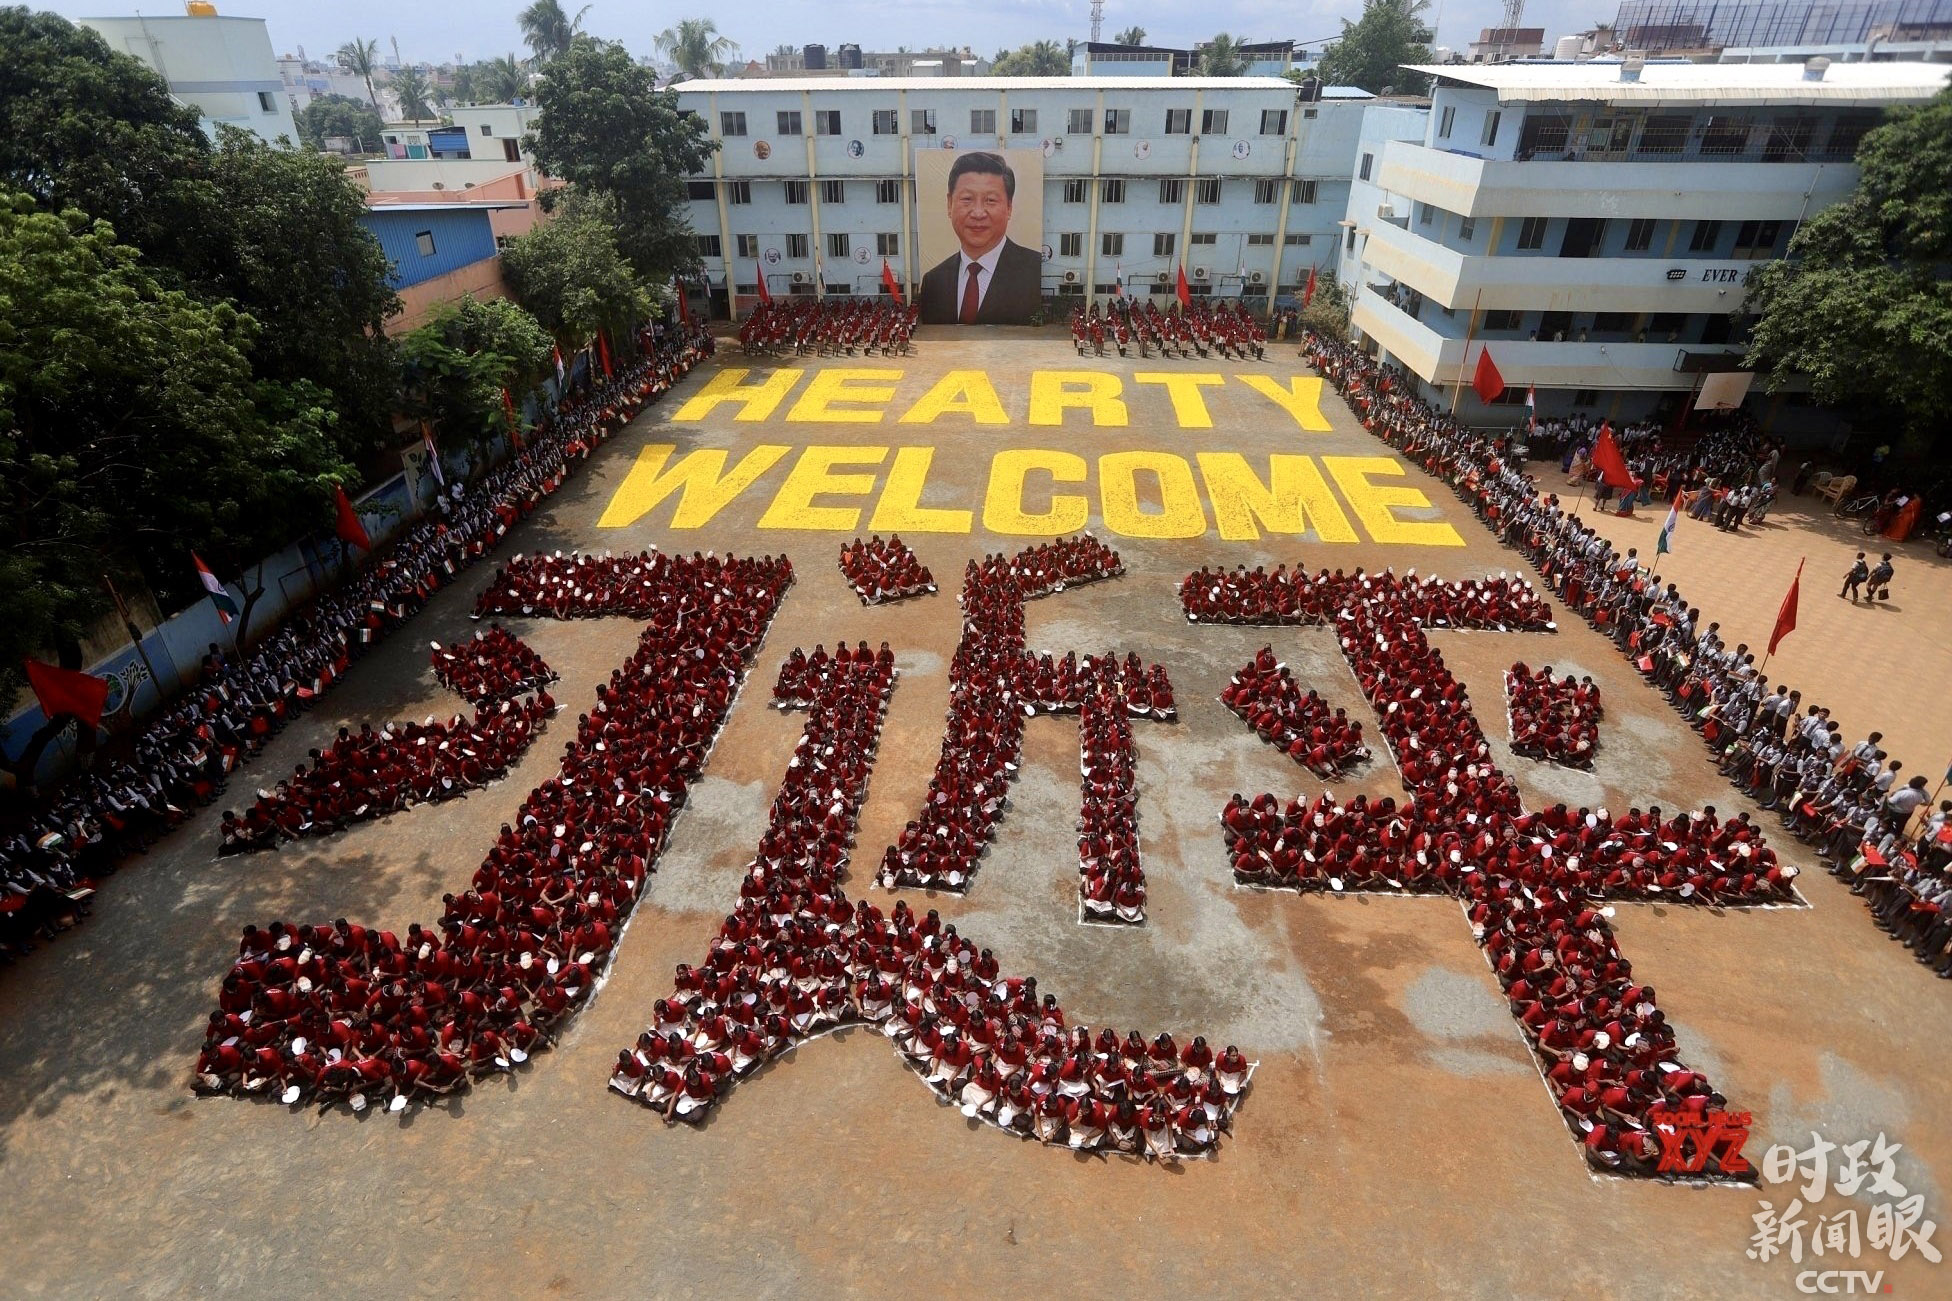 △金奈一所学校约2000名学生摆出“习近平”的汉字，并用黄色字体在空地上写着“HEARTY WELCOME”（热烈欢迎）。他们以这种特别的方式欢迎习主席访问印度。